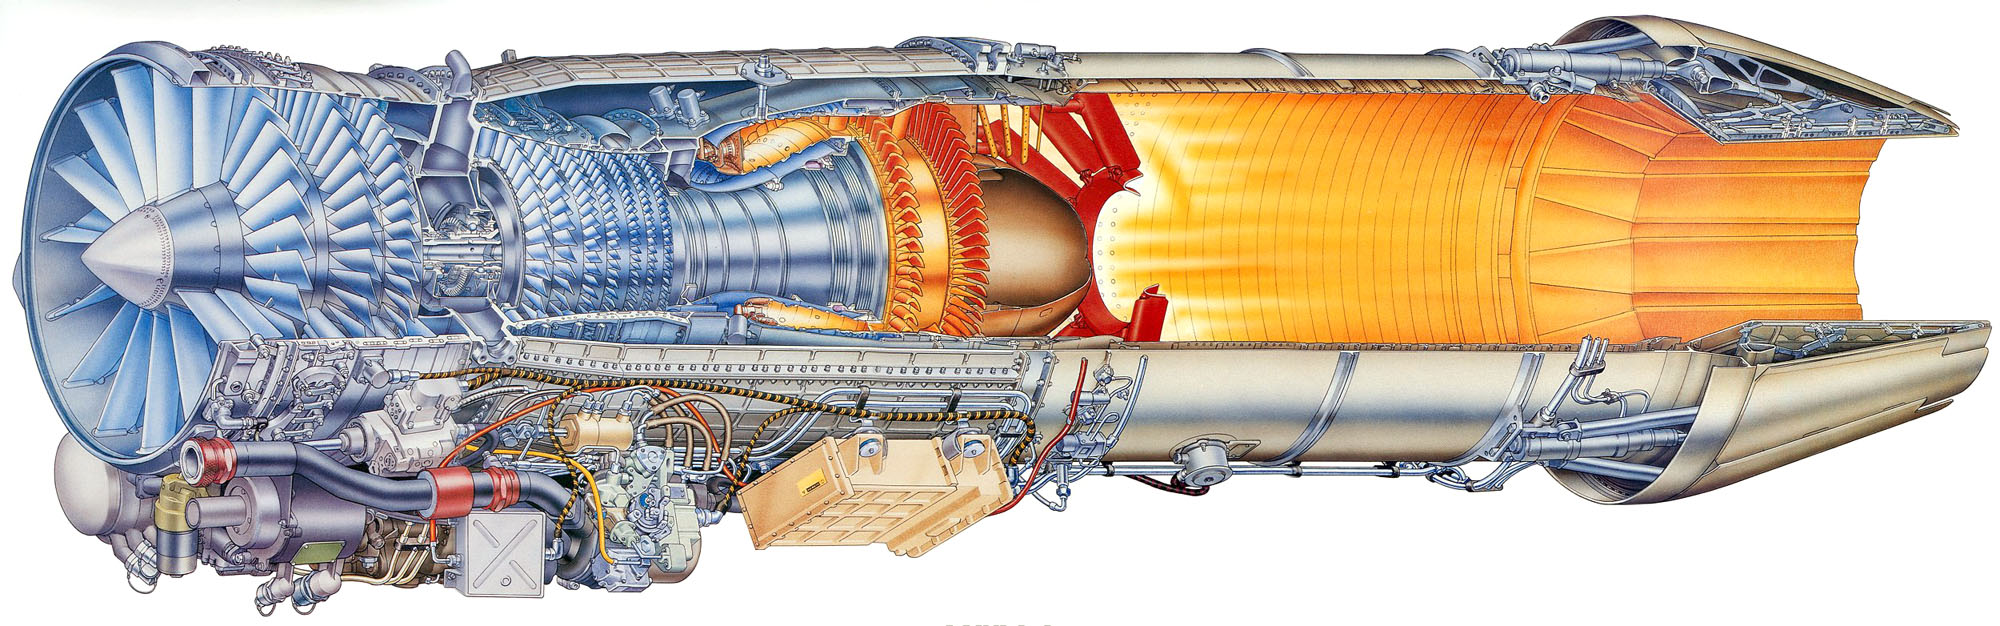 O motor GE F414 é uma evolução do famoso F404